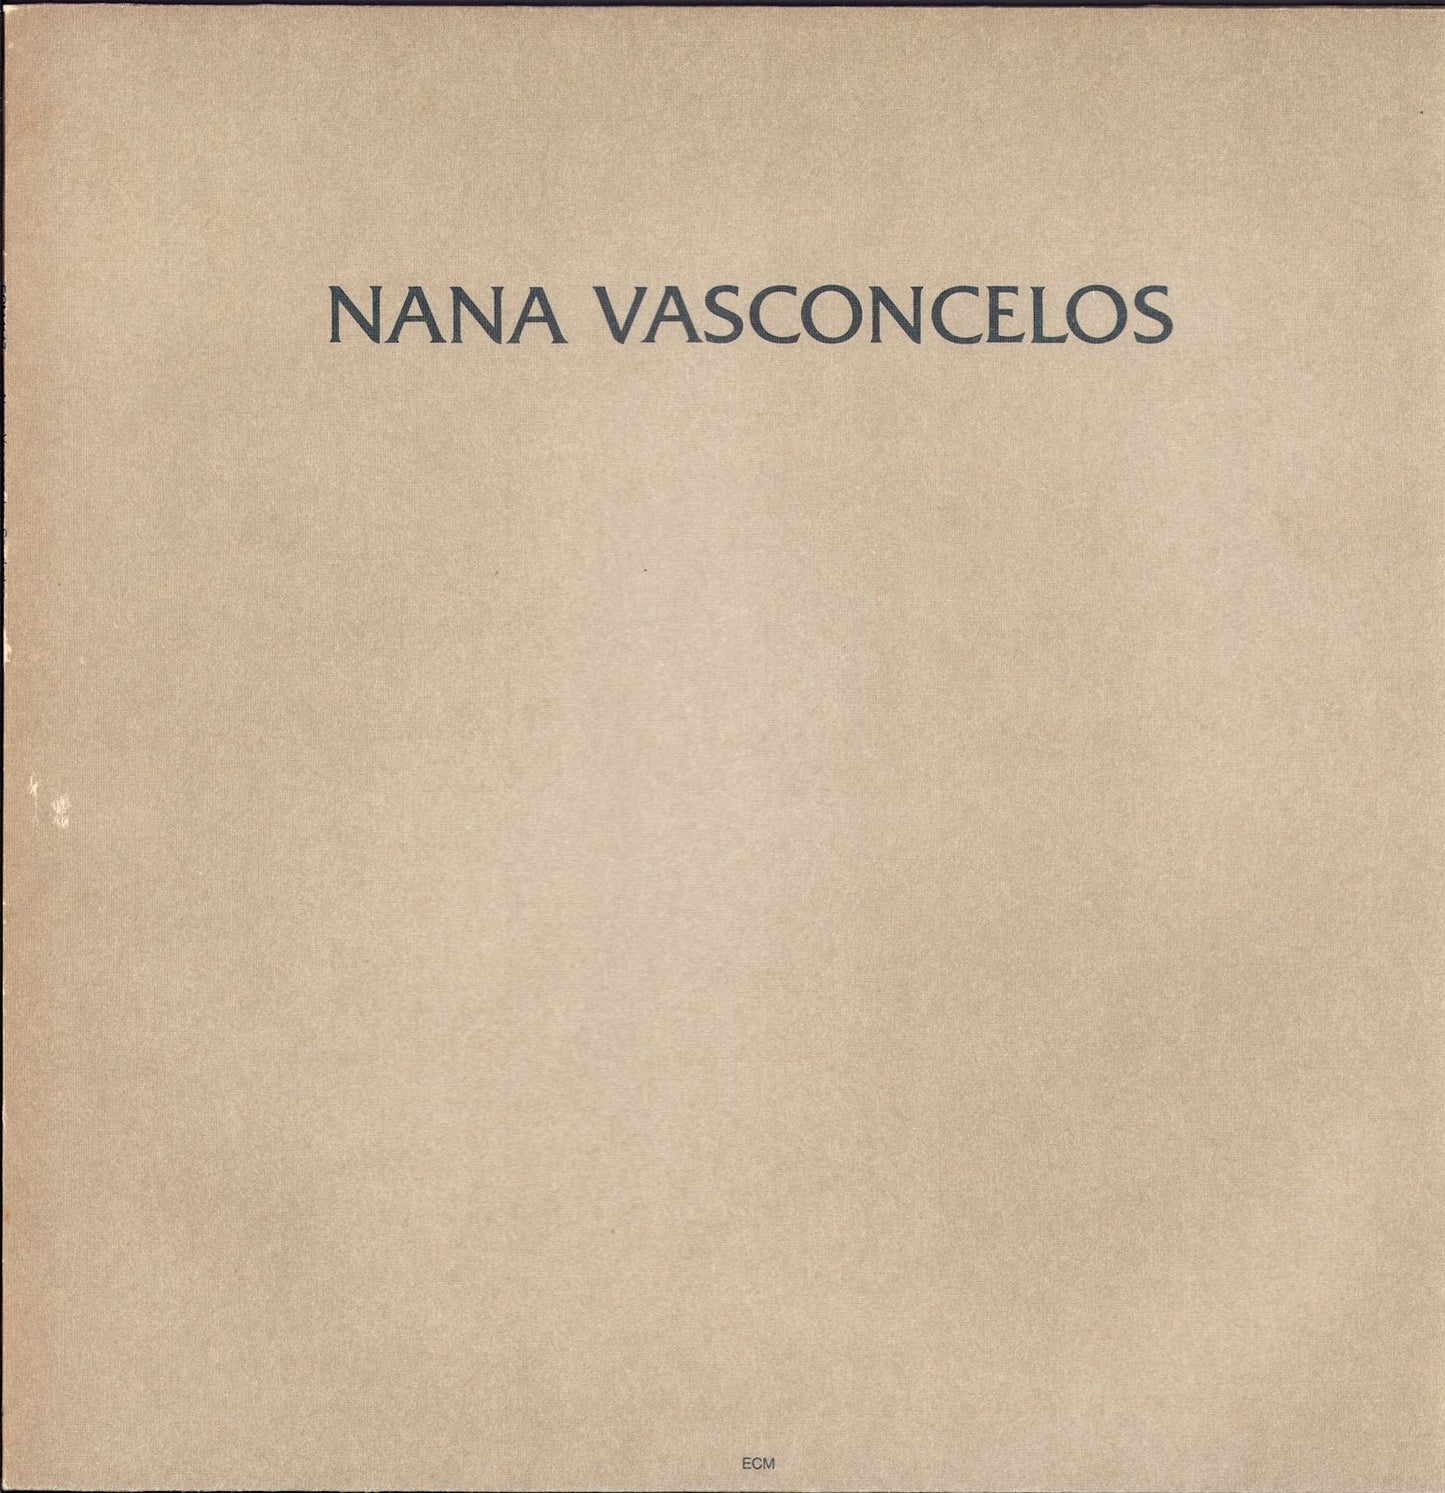 Nana Vasconcelos - Saudades Vinyl LP ECM Records